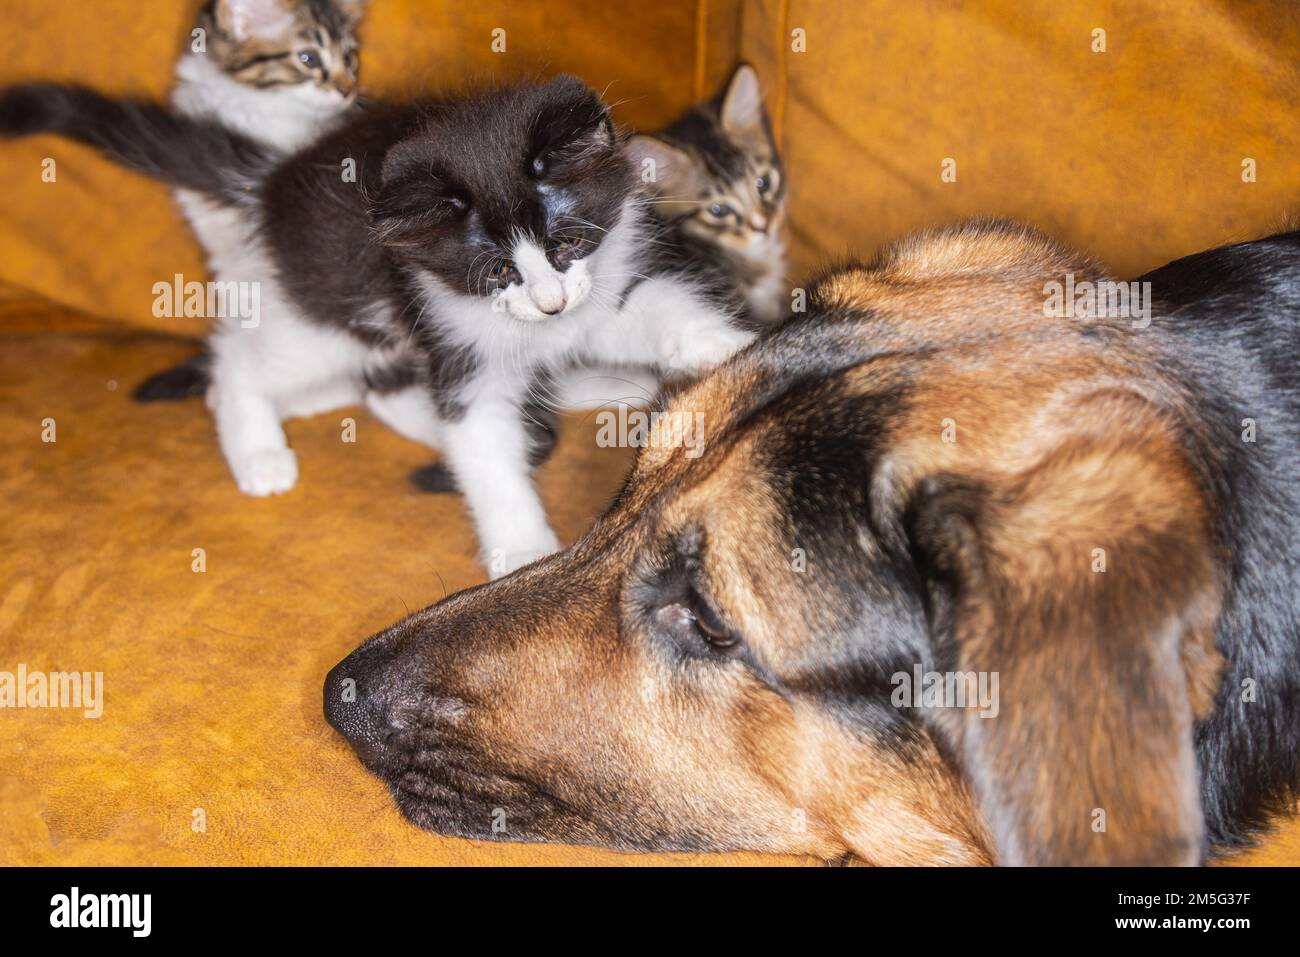 Kleines Kätzchen, das einen Hund ärgert. Katze und Hund harmonisch Seite an Seite, Kittenschutz über alle Arten hinweg. Tierpflege. Liebe und Freundschaft. Inland Stockfoto